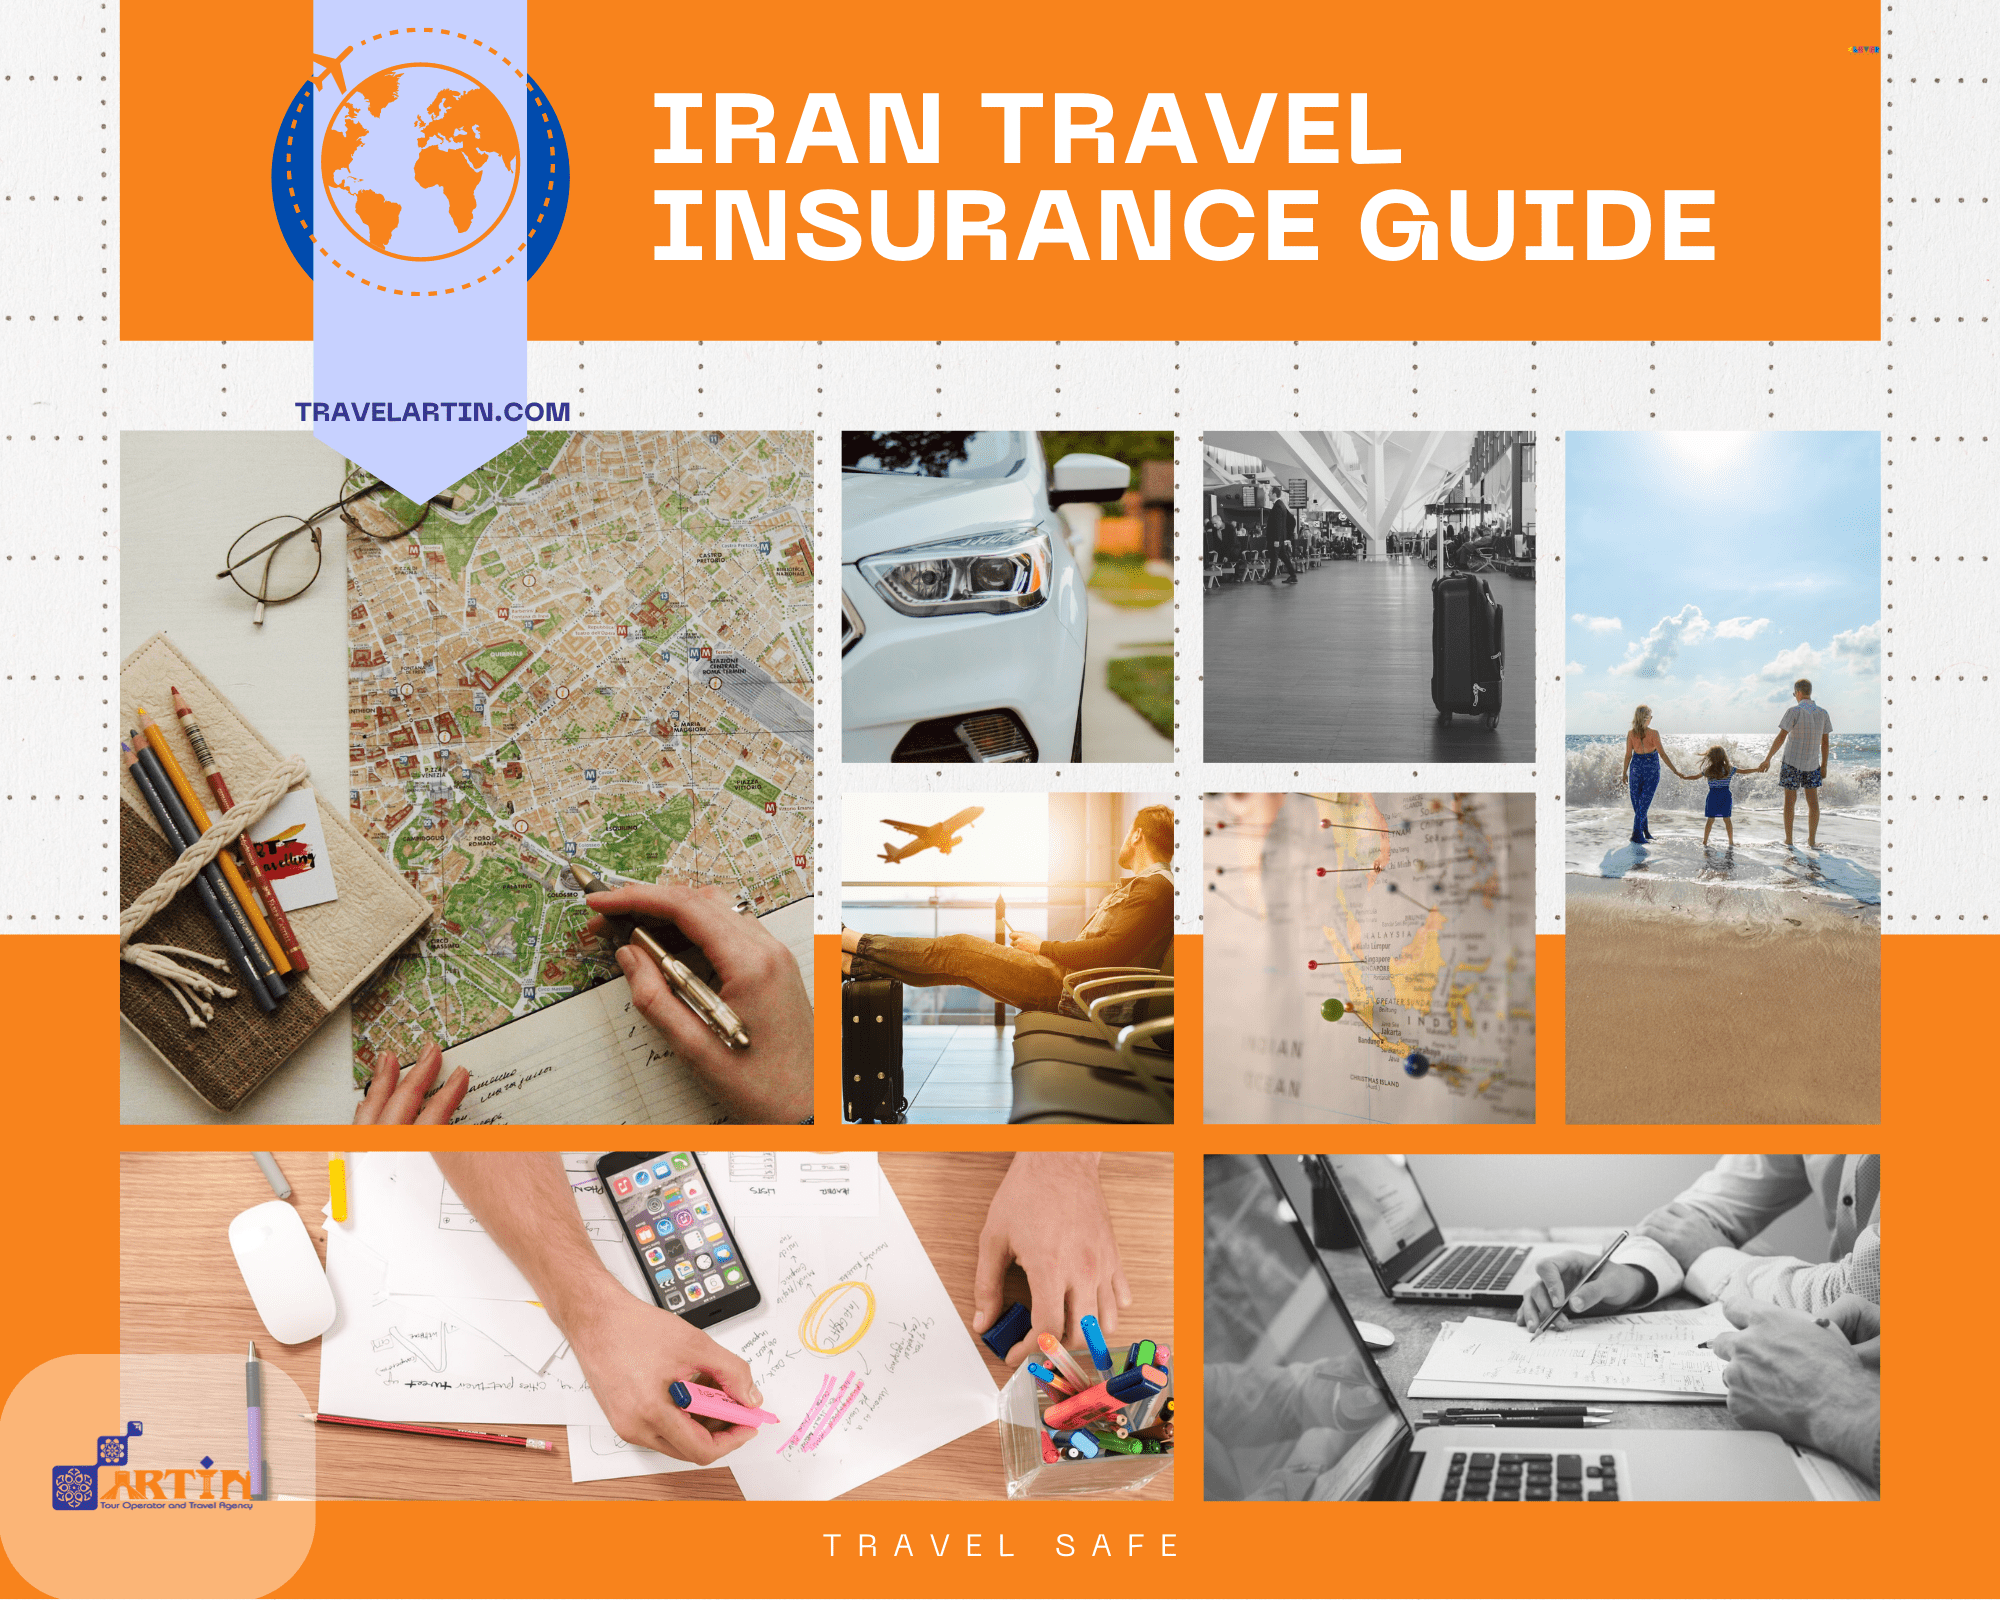 iranian travel insurance